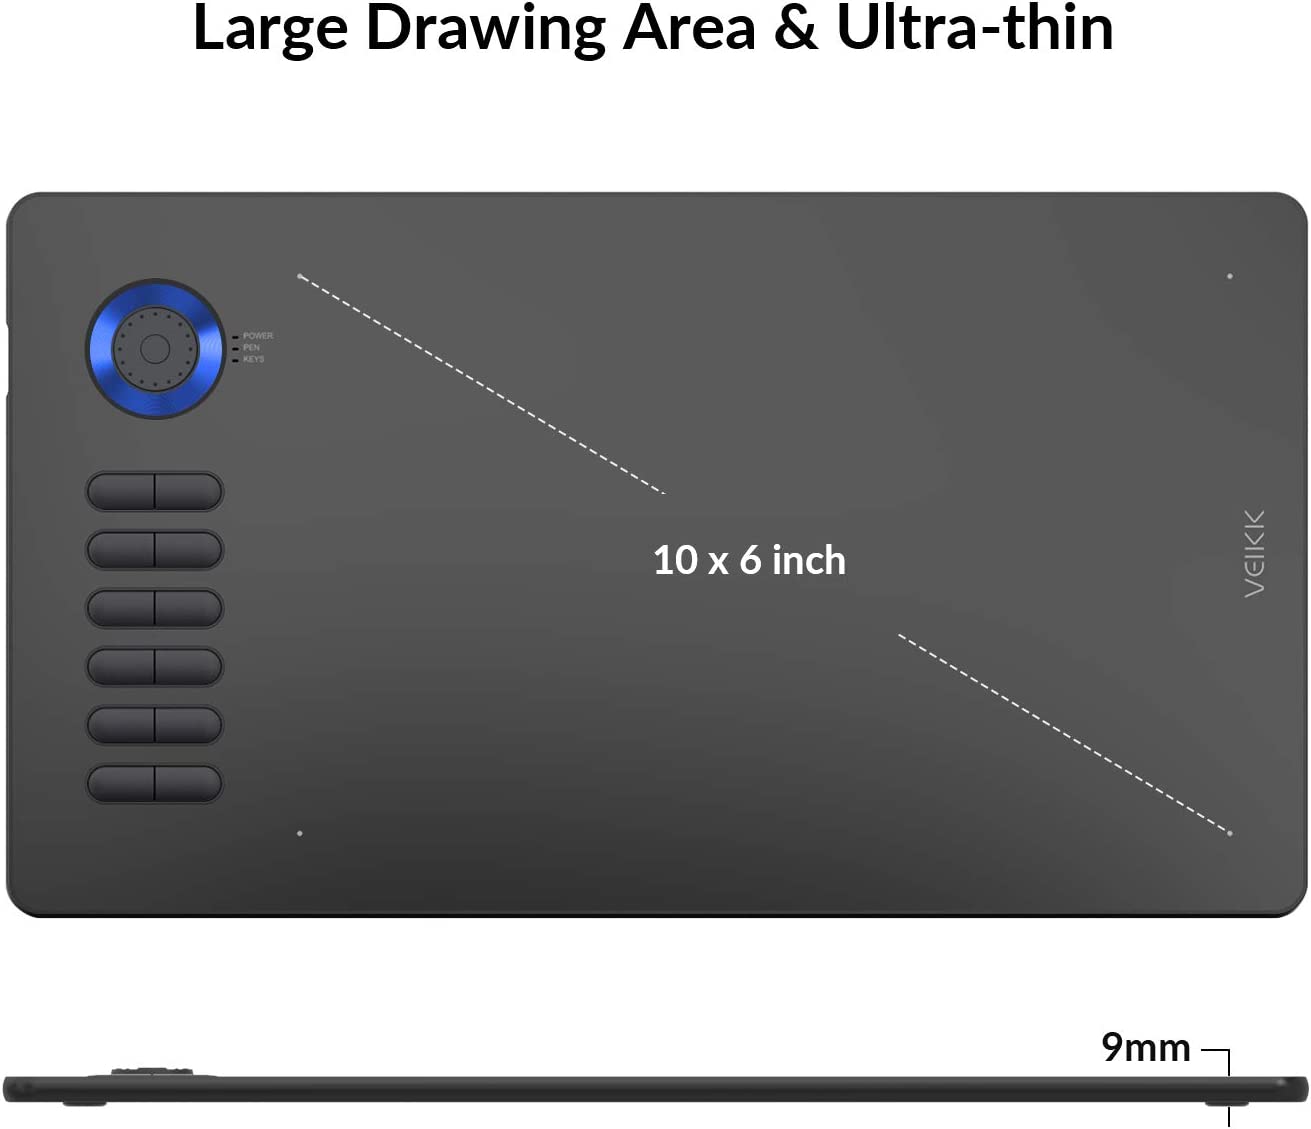 تبلت طراحی ویک VEIKK Drawing Tablet مدل A15 Pro - ارسال ۱۰ الی ۱۵ روز کاری